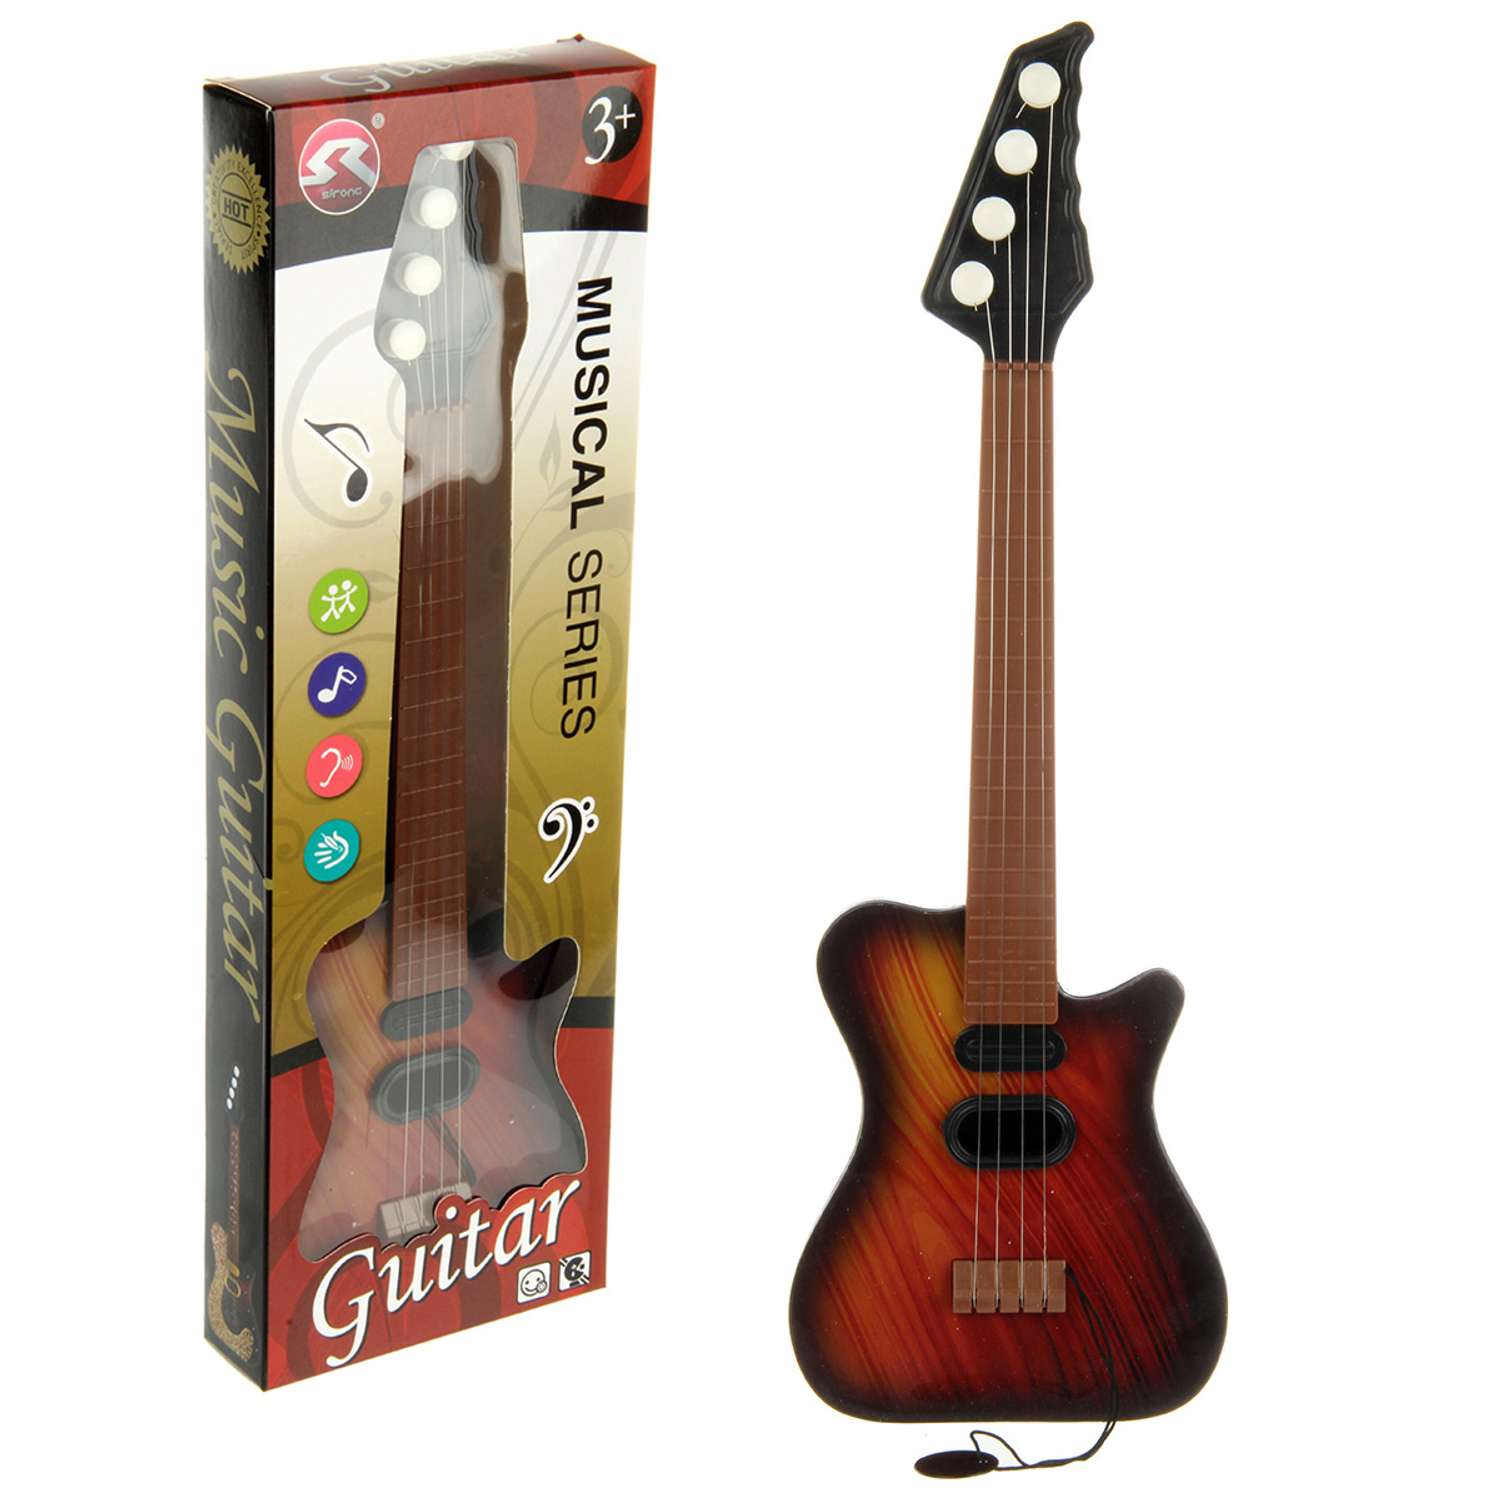 Музыкальная игрушка Veld Co гитара - фото 2